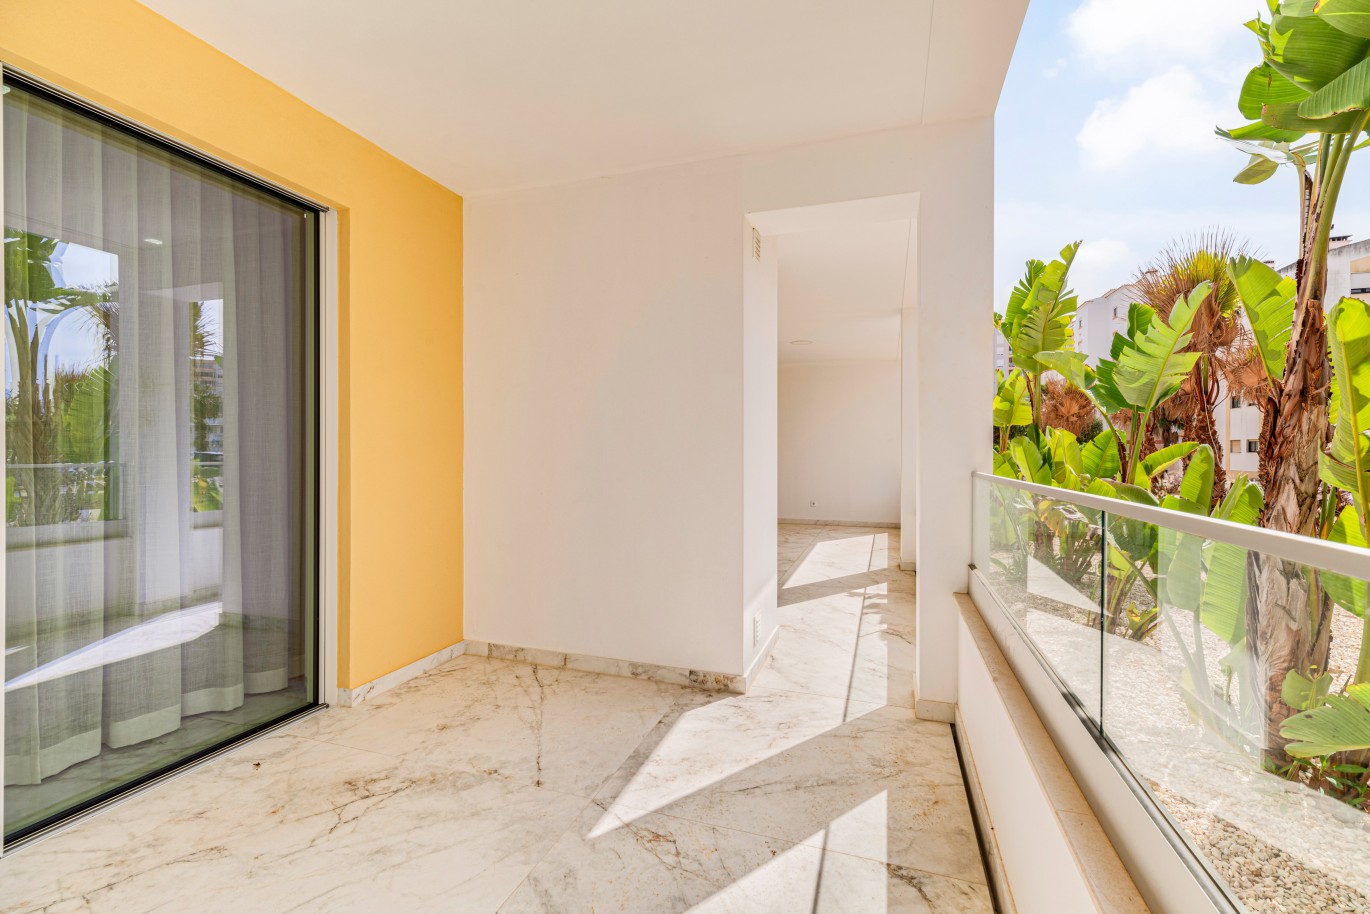 Apartamento, com terraço, para venda, em Lagos, Algarve_238104